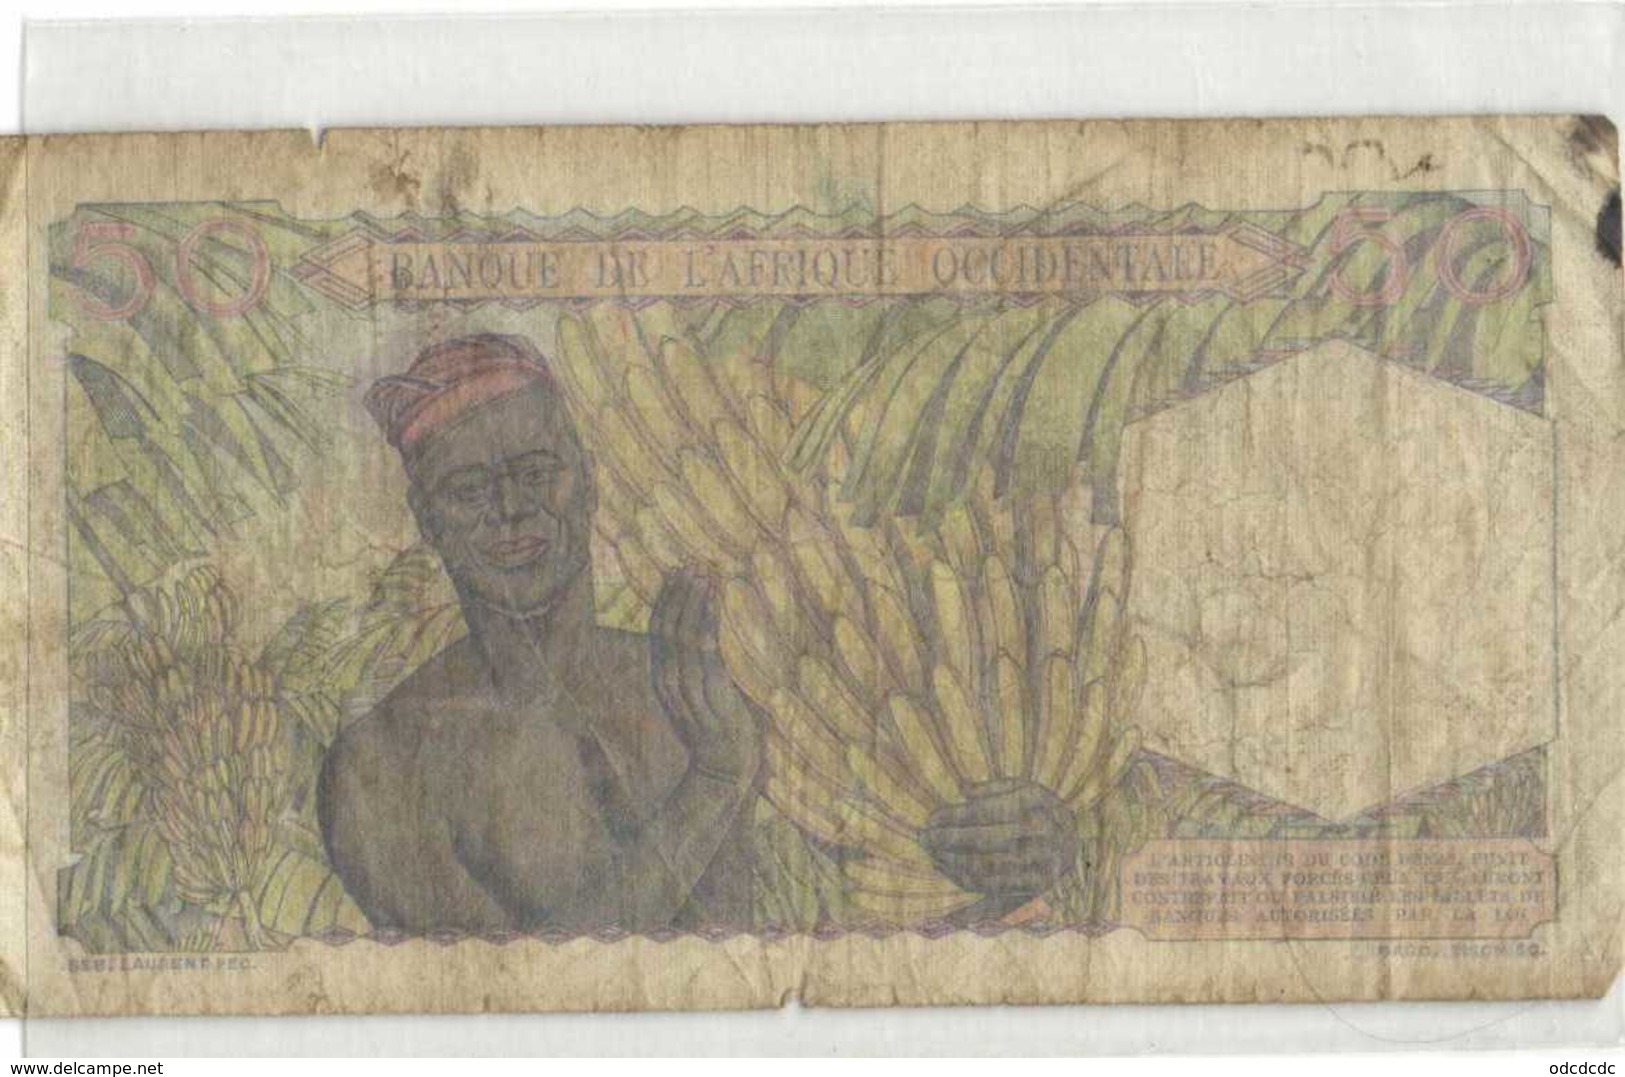 50 Francs BANQUE DE L'AFRIQUE OCCIDENTALE 27 9 1944   RV - Other - Africa